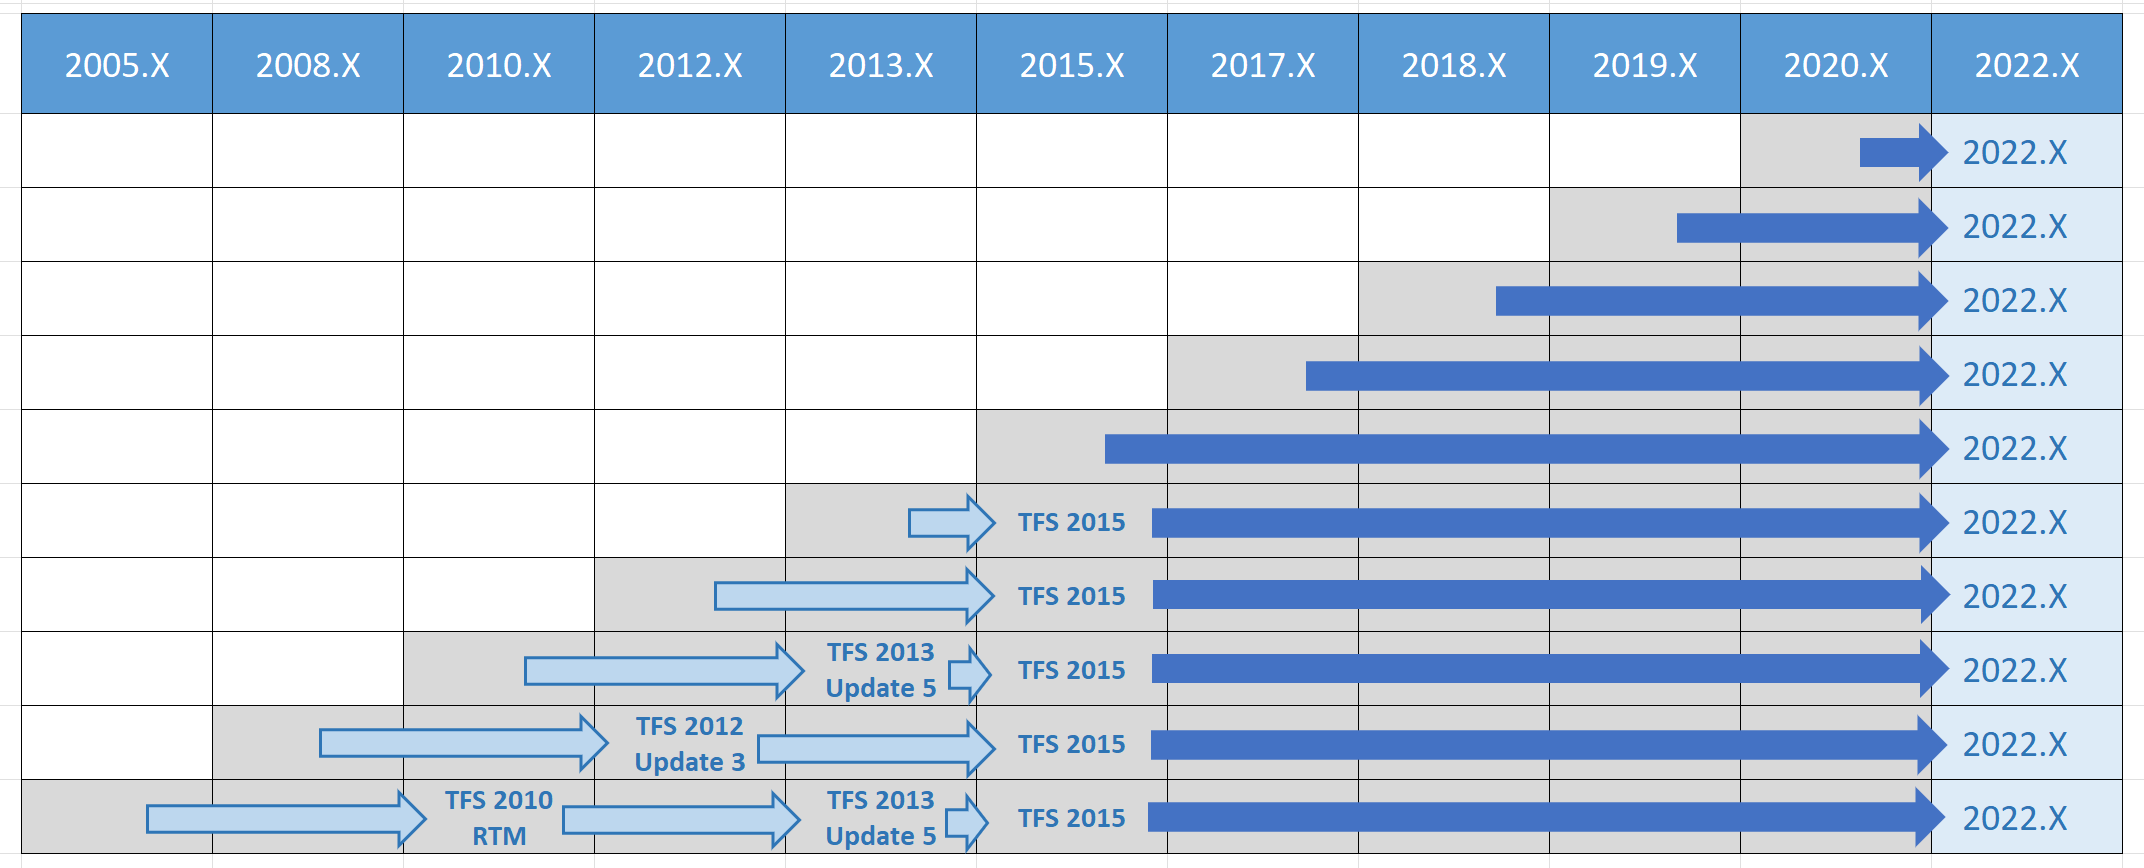 Azure DevOps 2022 – Matice cest upgradu pro všechny předchozí verze